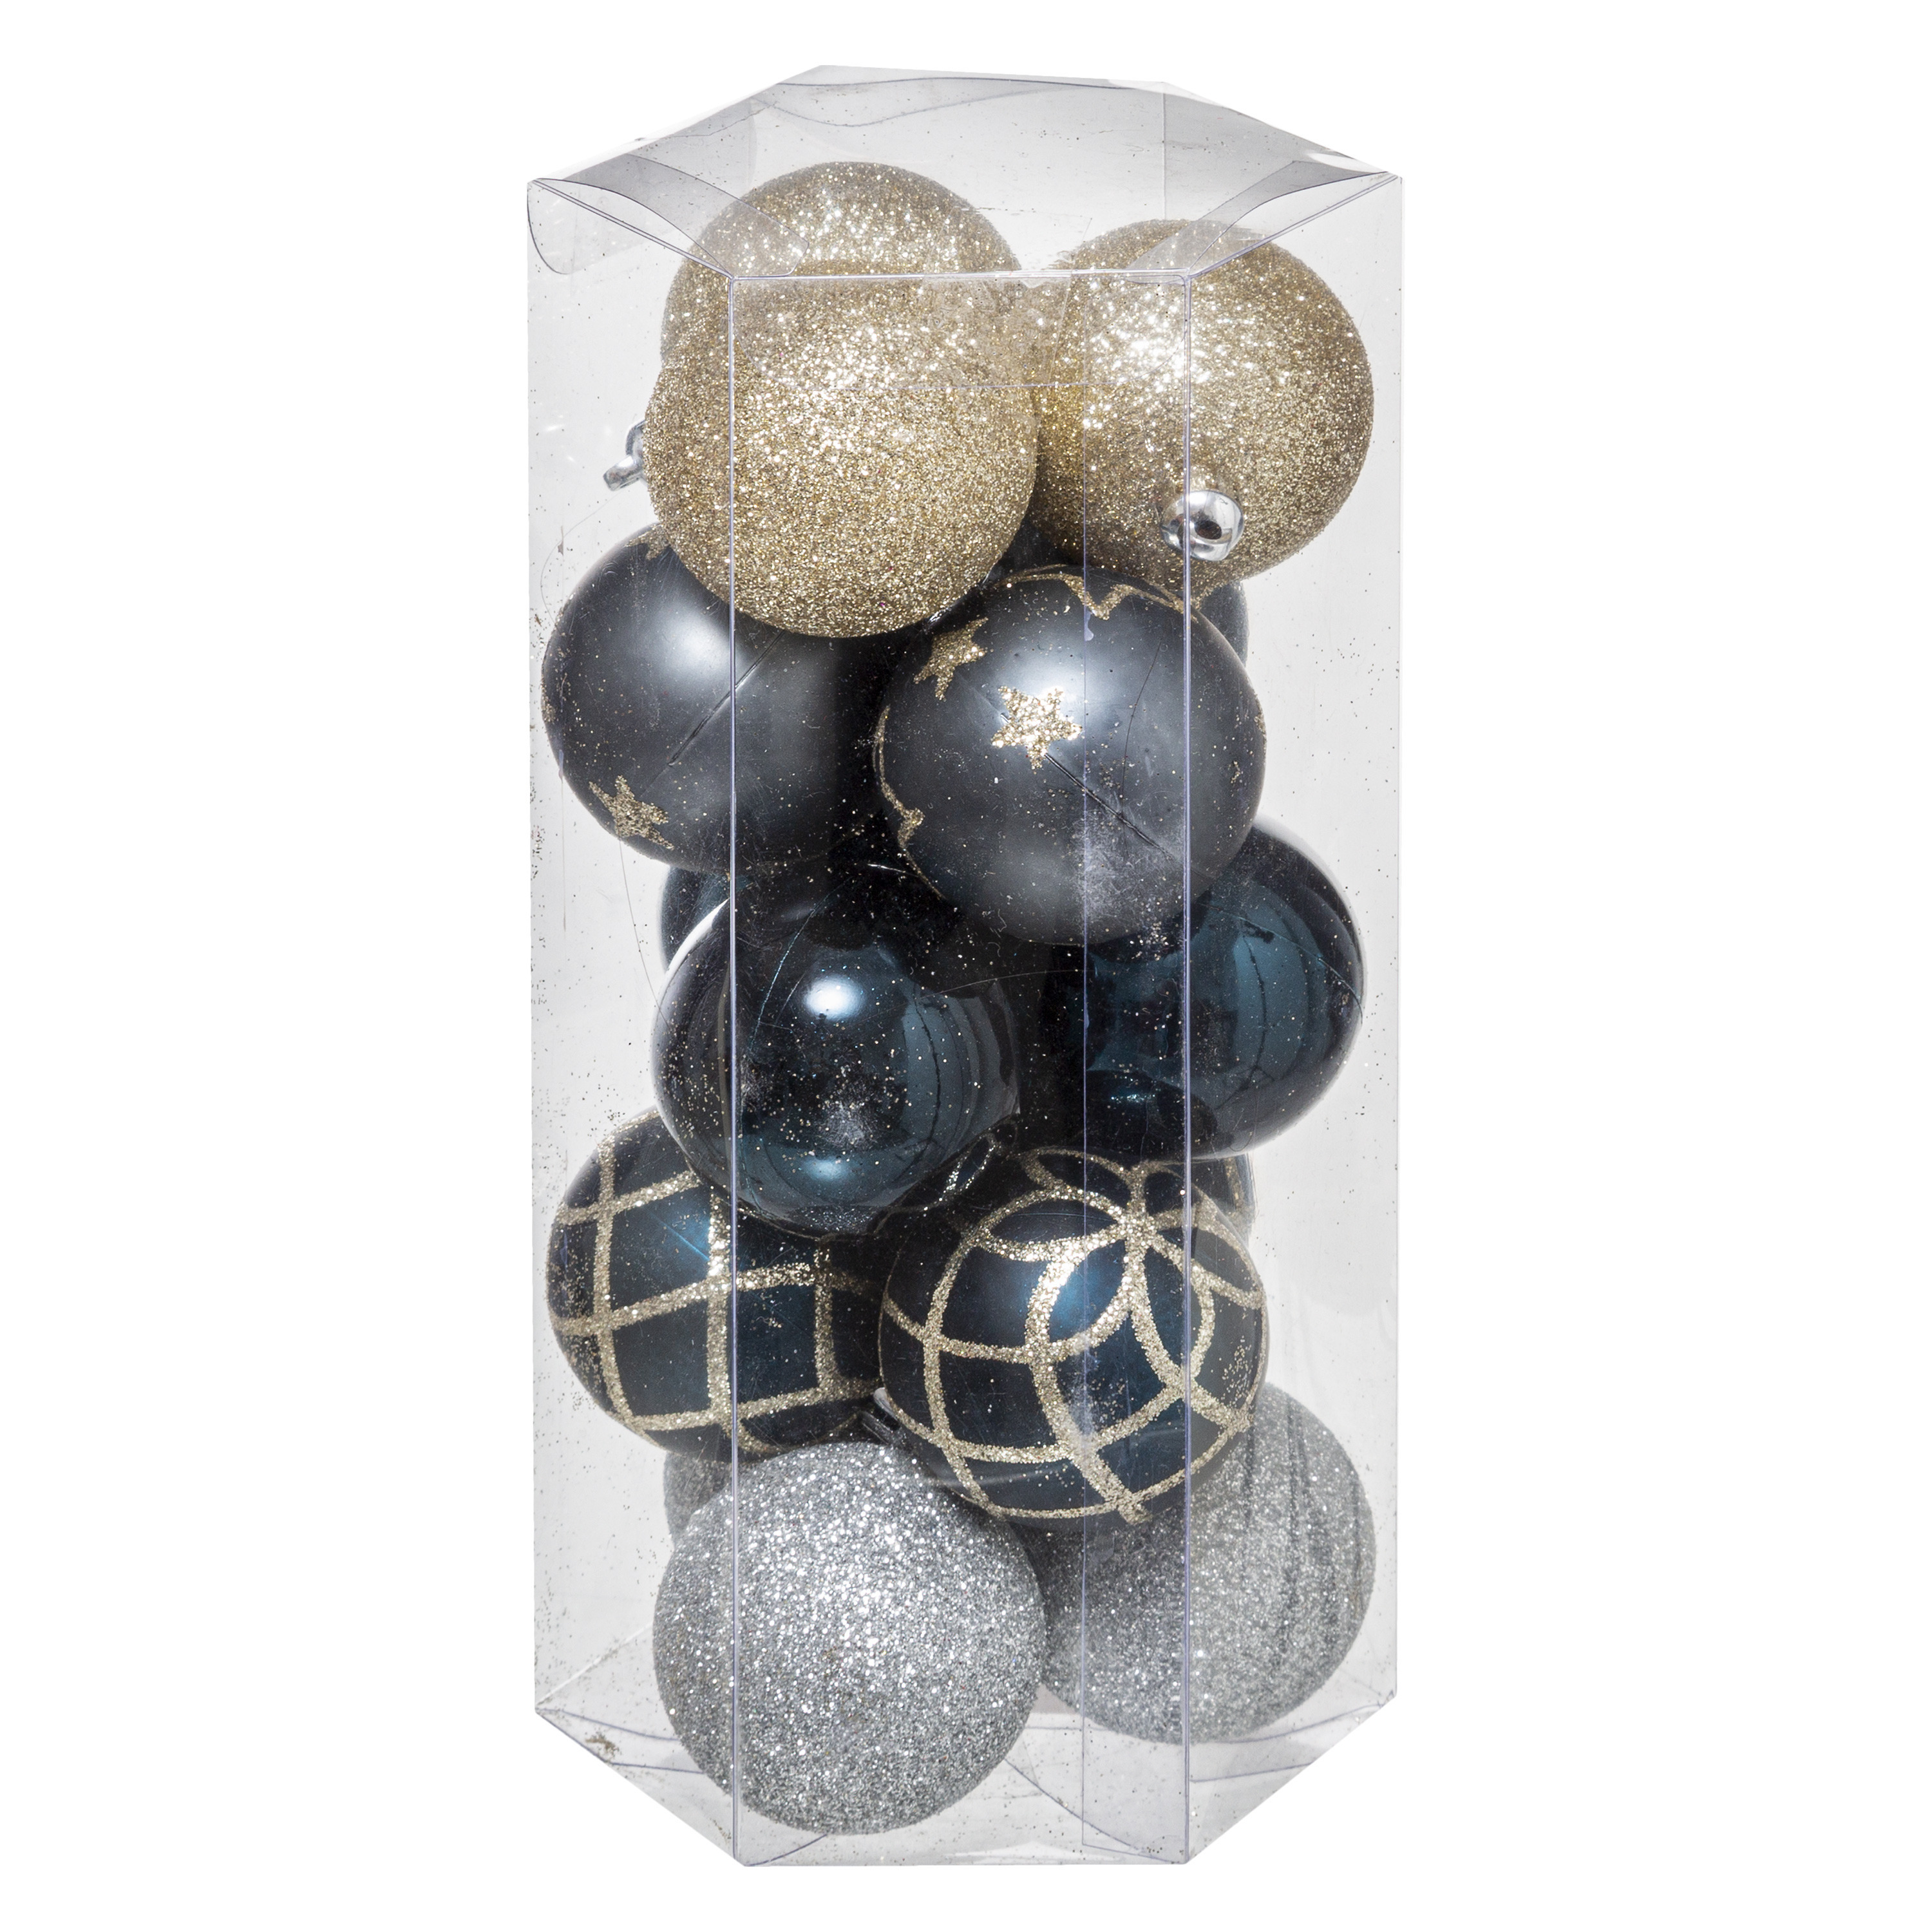 15x stuks kerstballen mix goud-blauw-zilver gedecoreerd kunststof 5 cm